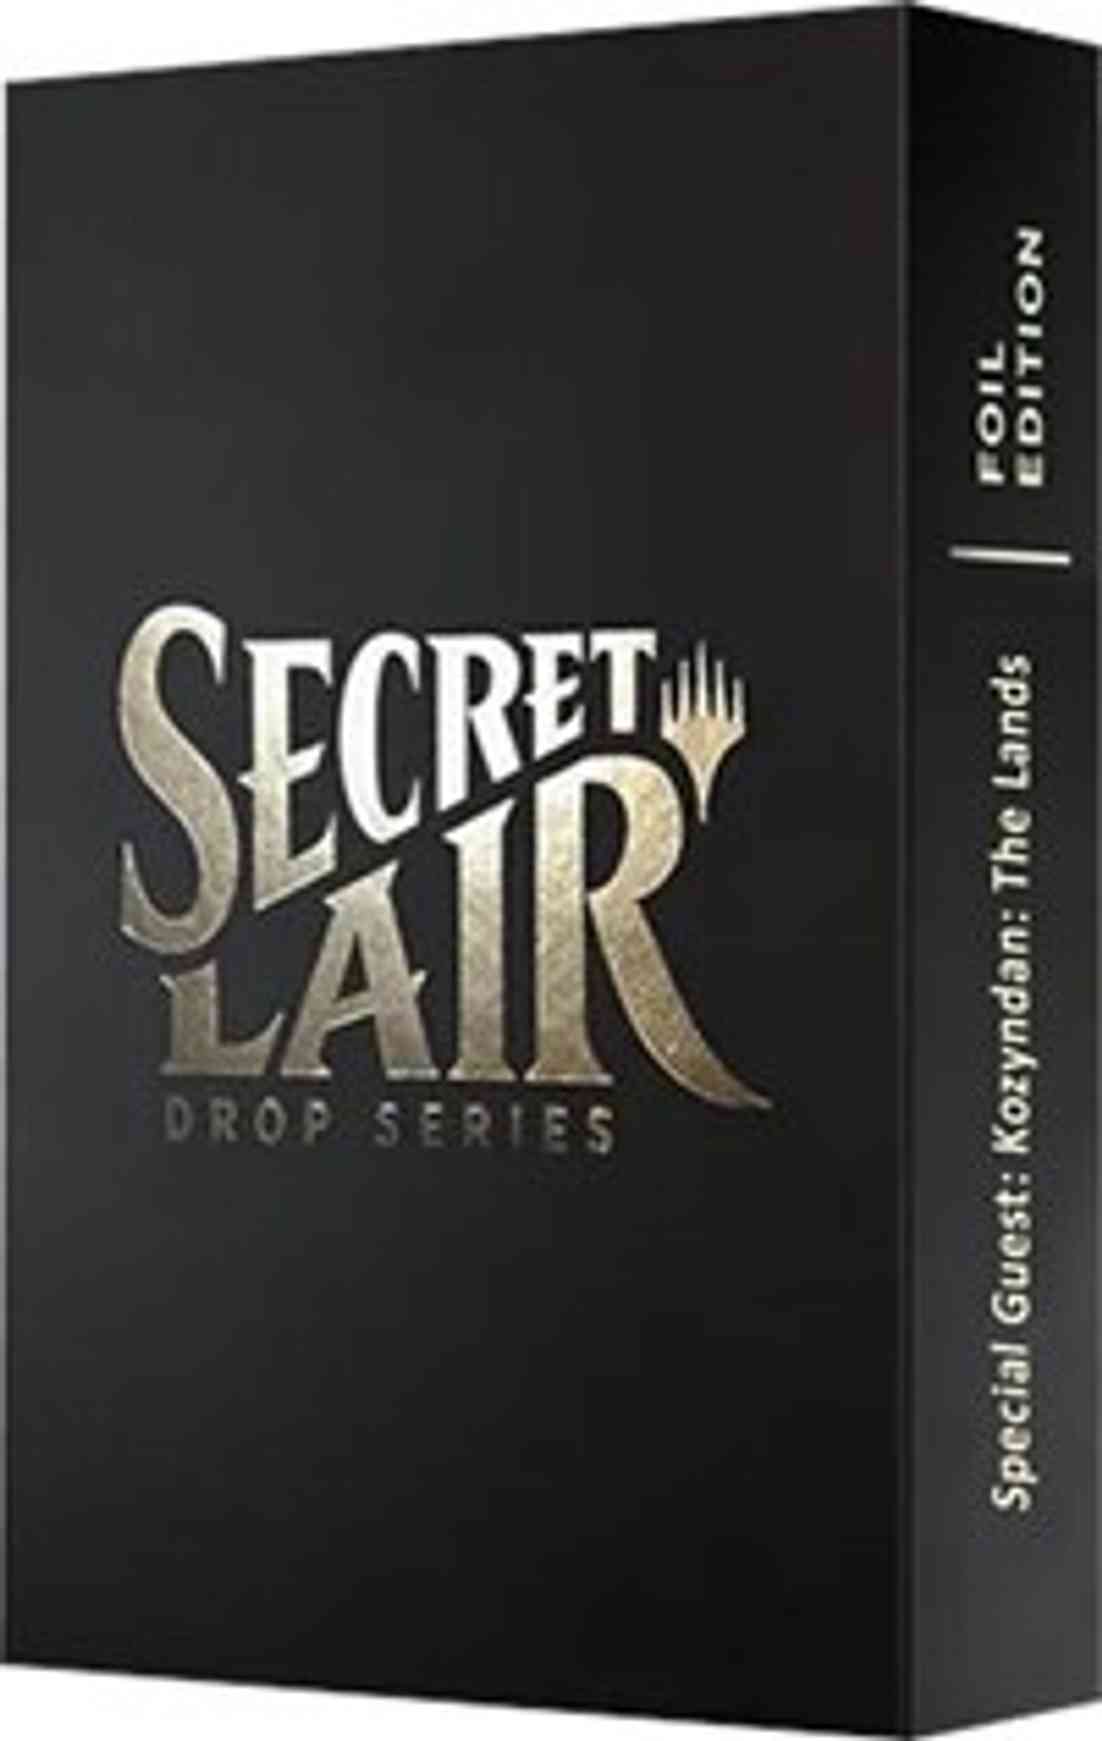 Secret Lair Drop: Special Guest: Kozyndan: The Lands - Foil Edition magic card front